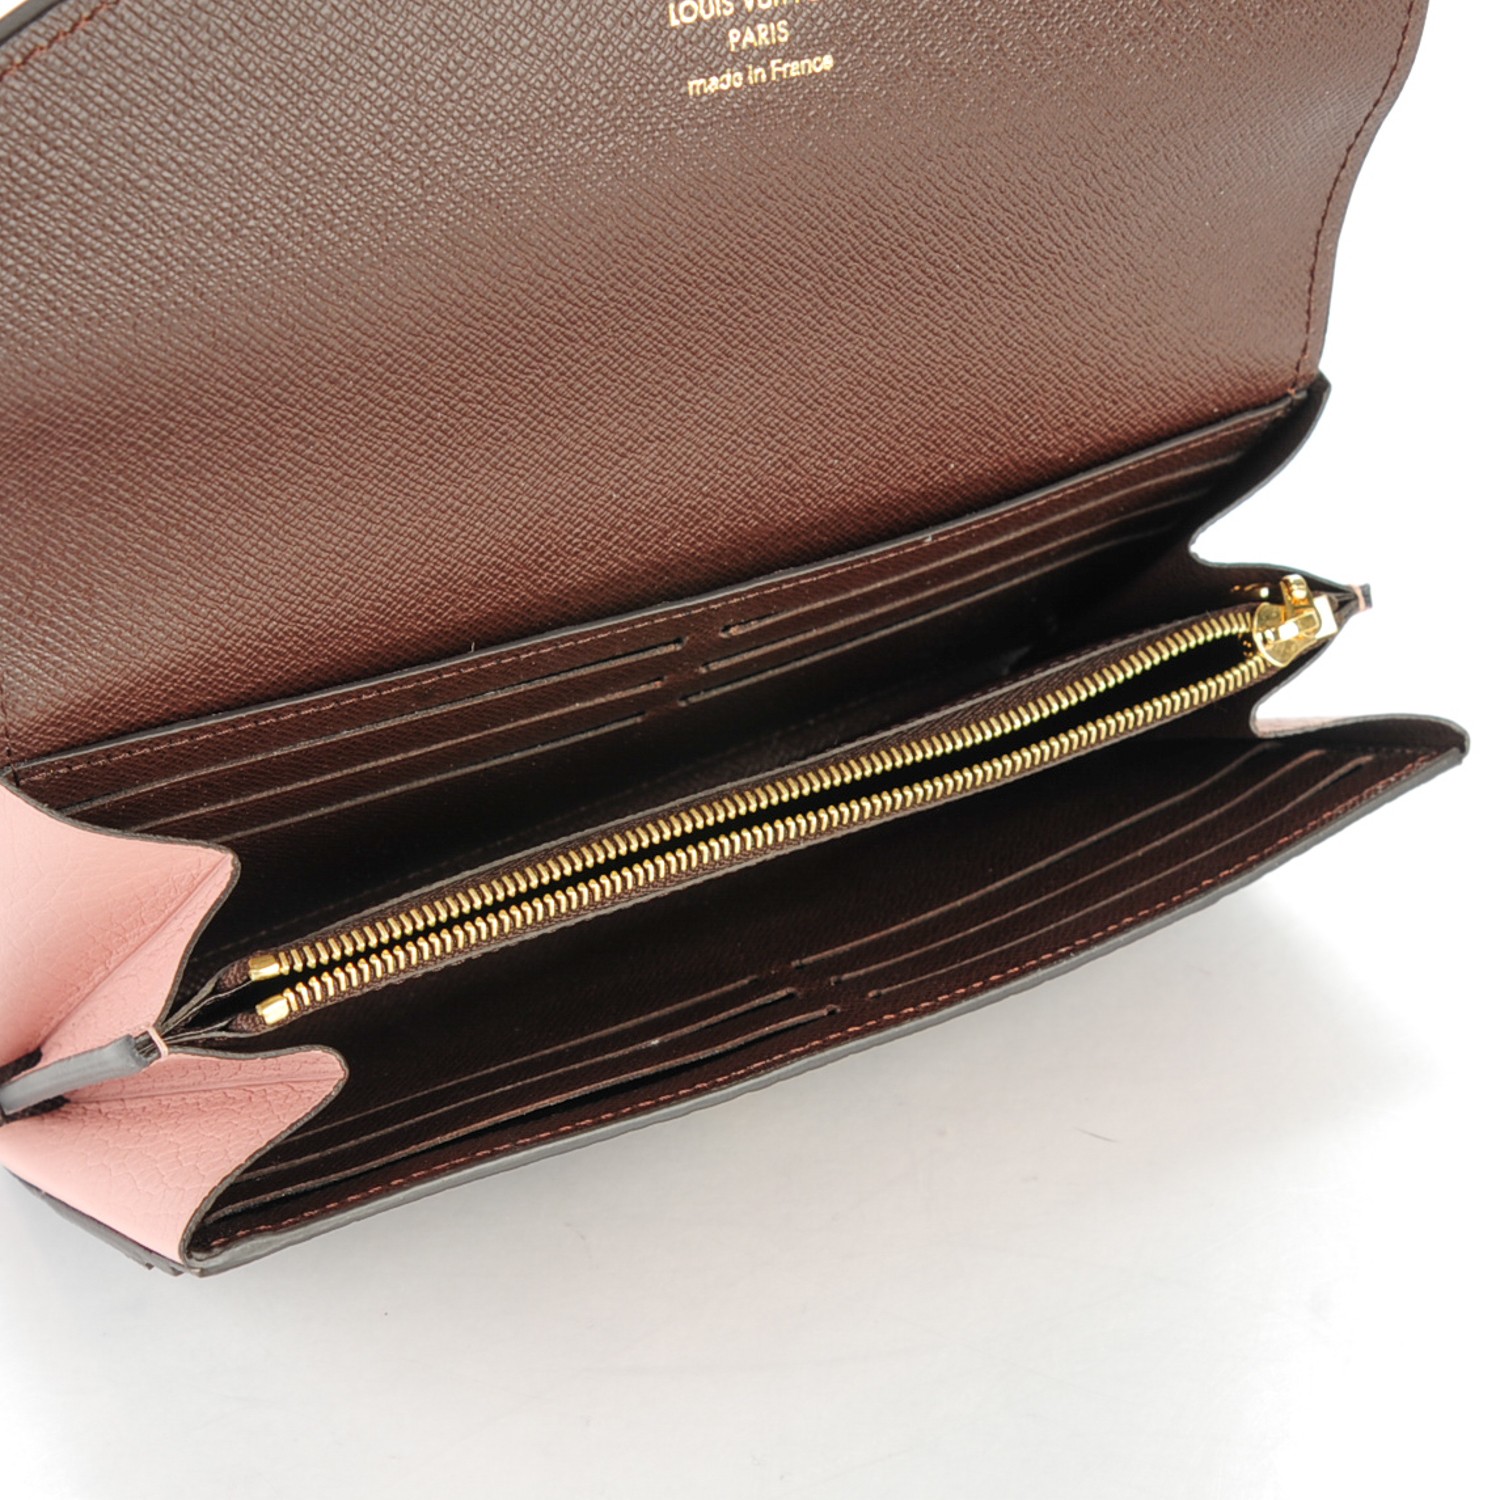 Louis Vuitton Damier Ebene Canvas & Magnolia Leather Normandy Wallet